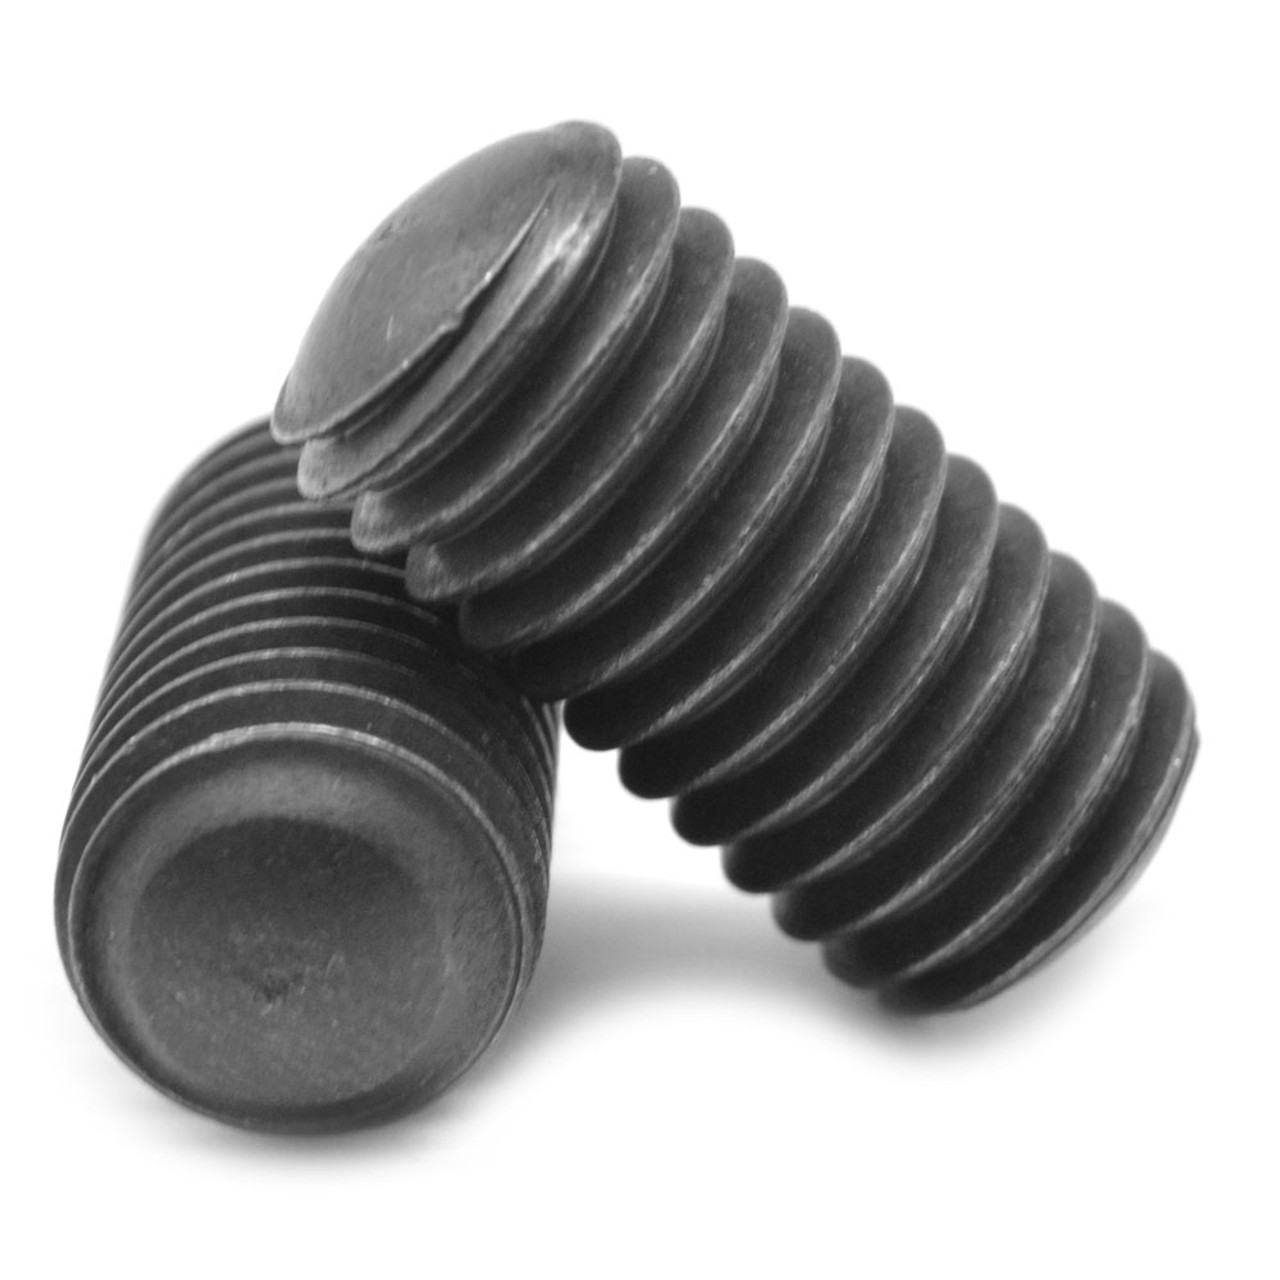 5/16"-18 x 1" Coarse Thread Socket Set Screw Oval Point Alloy Steel Black Oxide